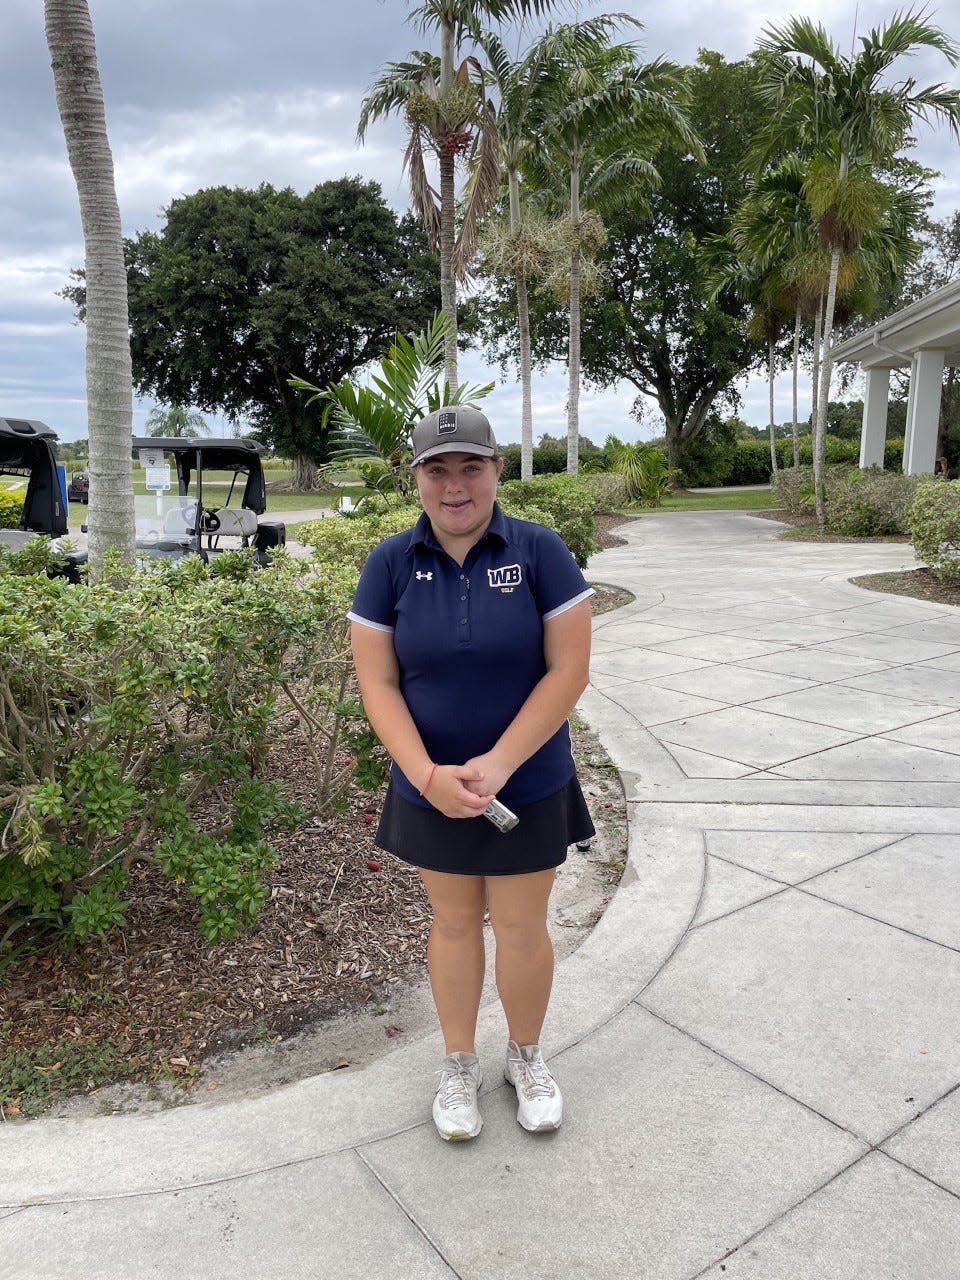 West Boca Raton golfer Madison Lowenstein